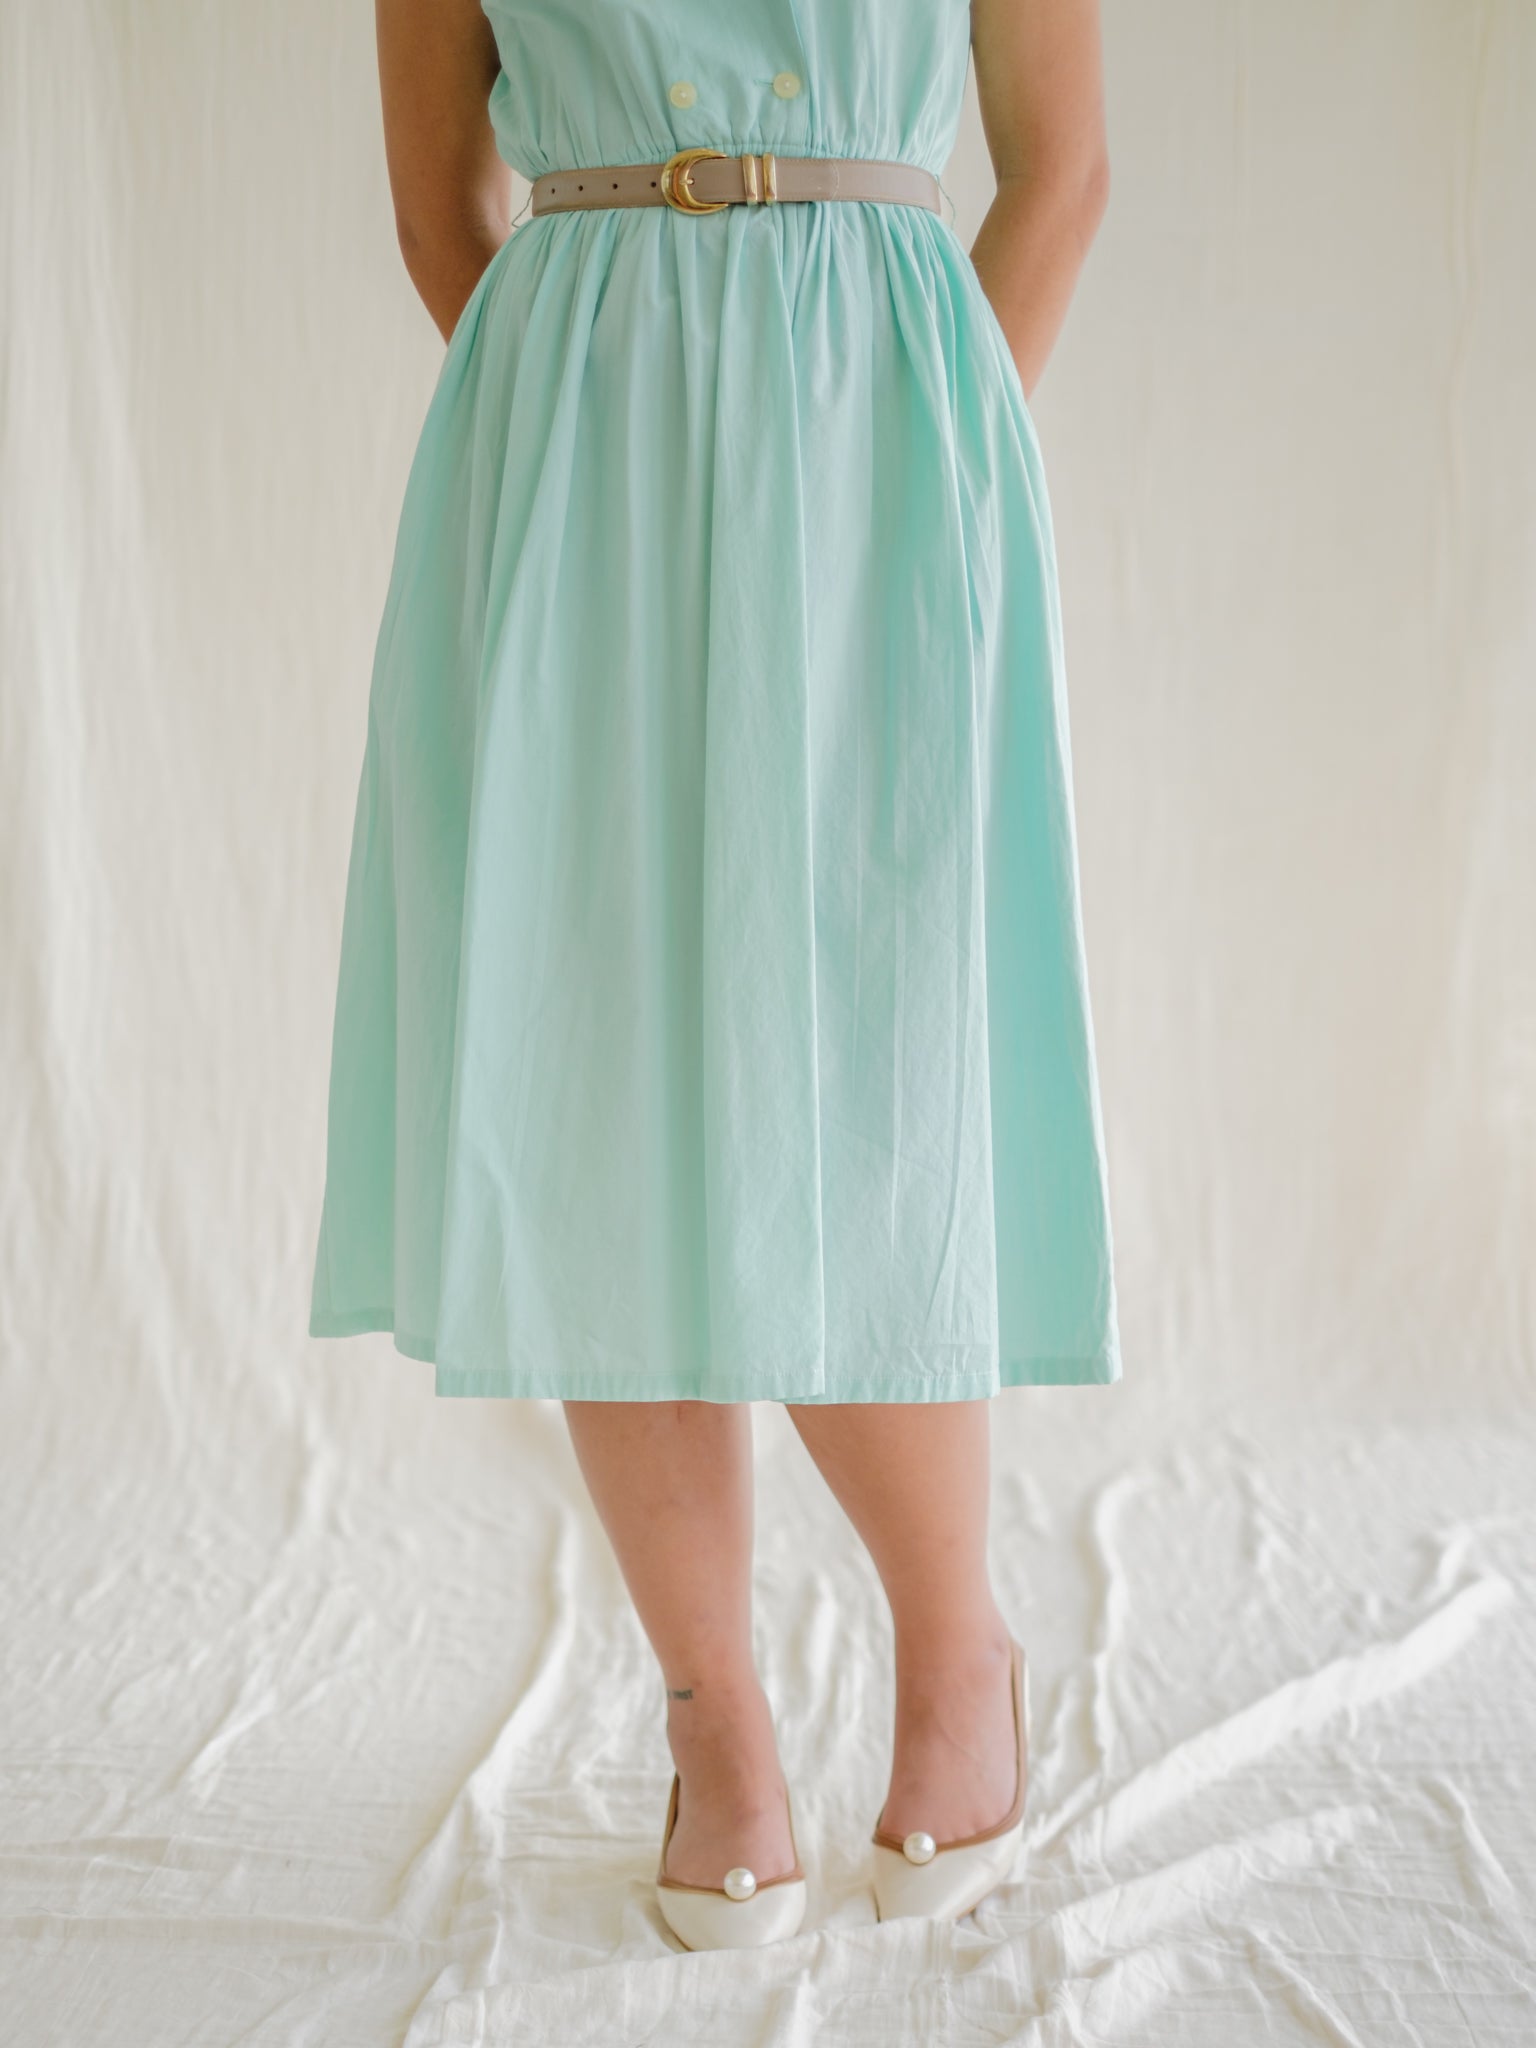 Mint shirtwaist vintage day dress